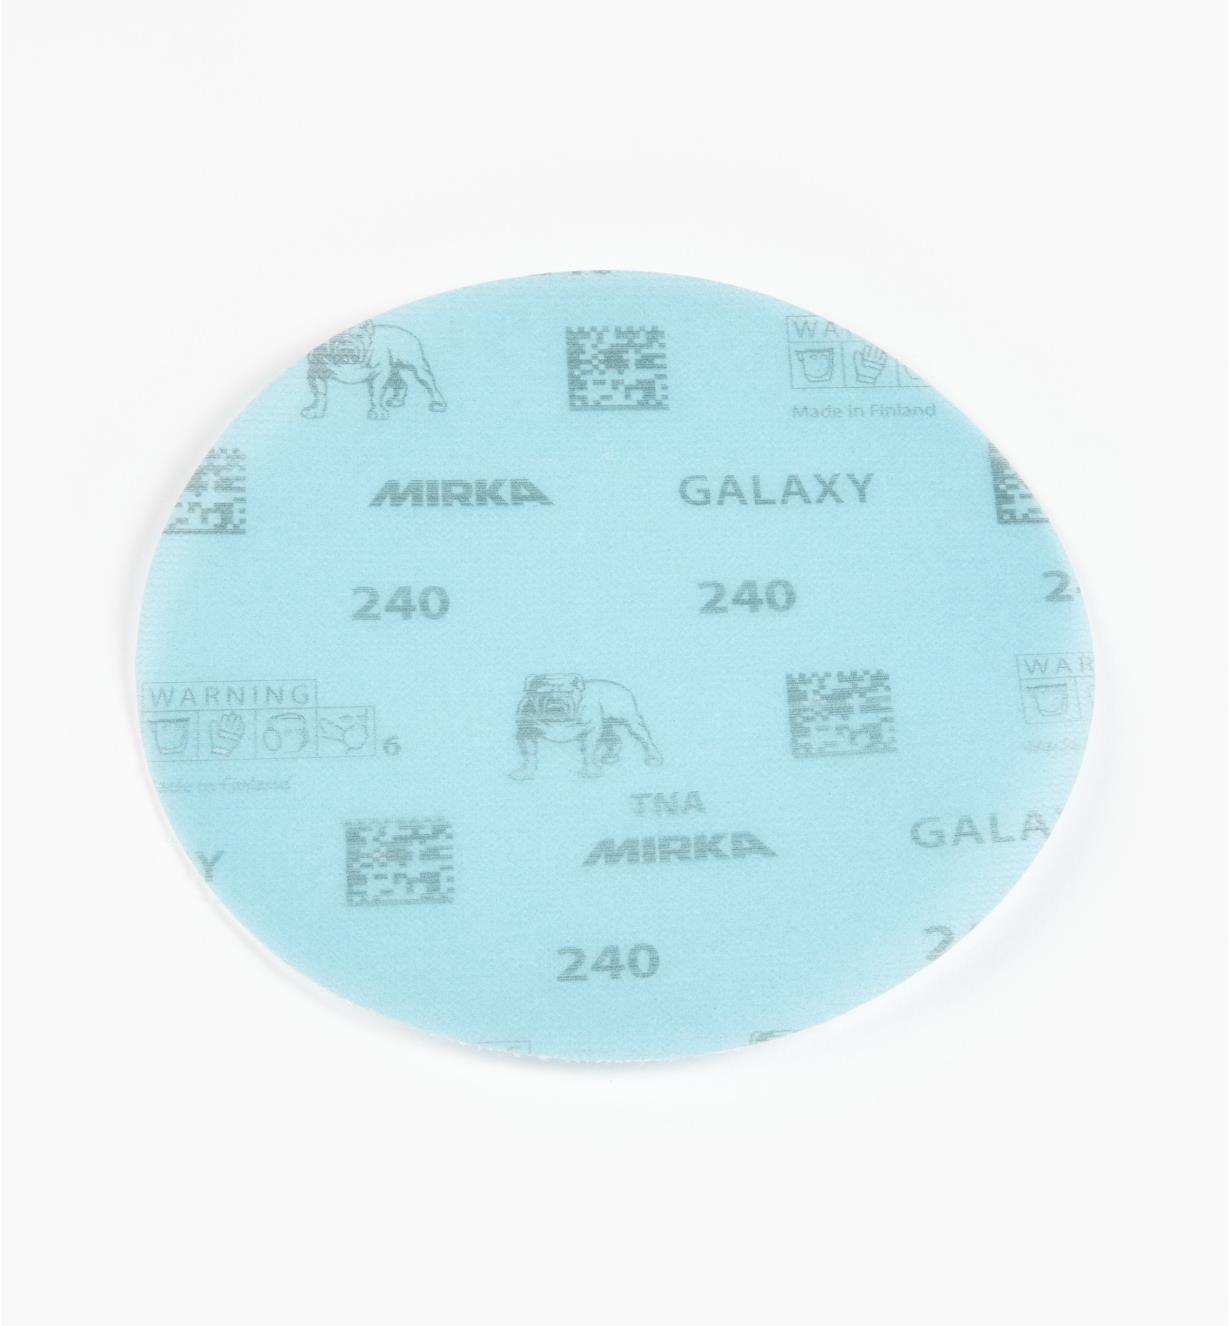 08K2109 - Disque abrasif autoagrippant Galaxy, 6 po, grain 240, l'unité